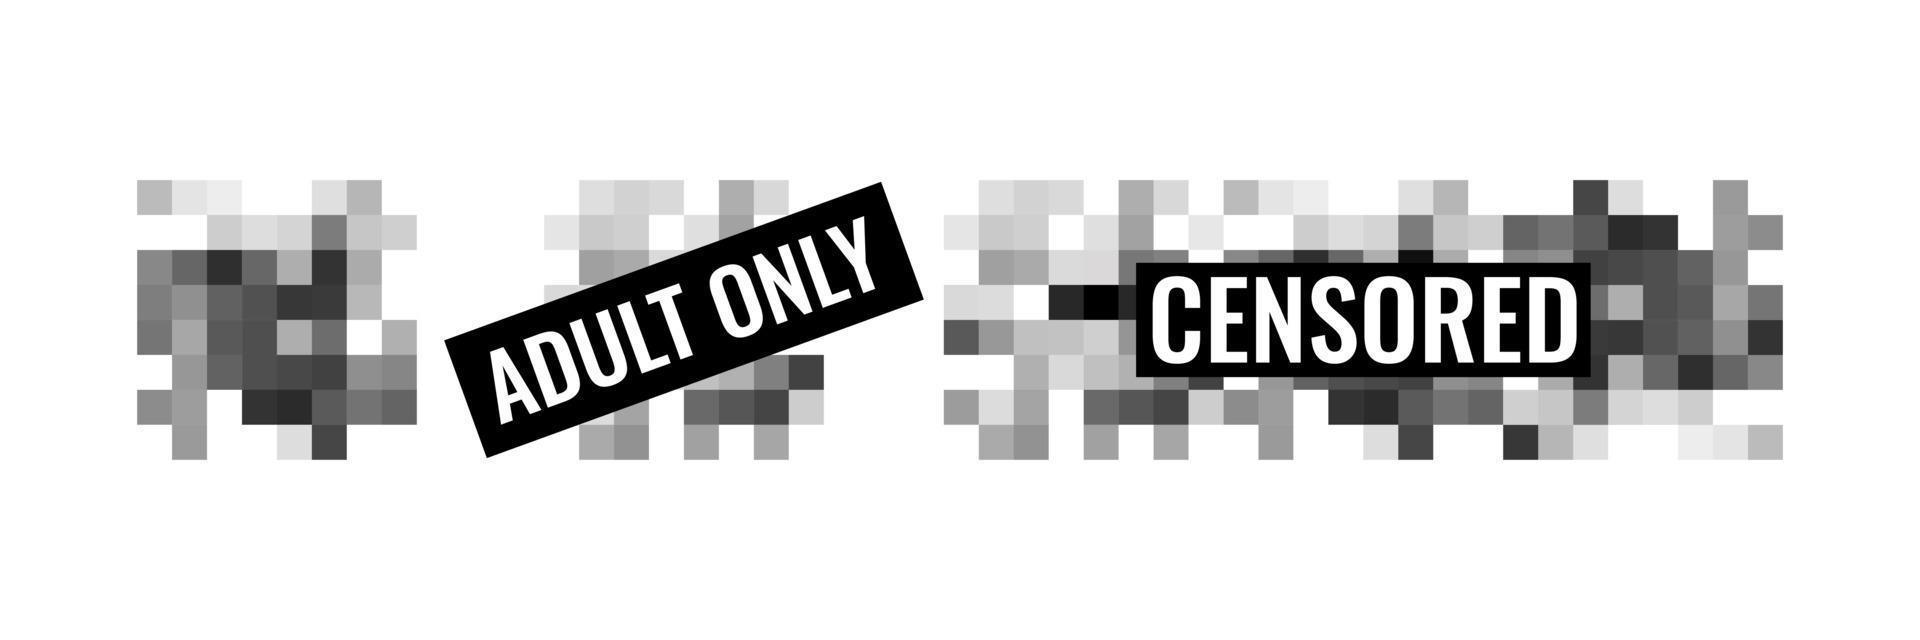 segno di pixel censurato design piatto illustrazione vettoriale concetto impostato isolato su sfondo bianco.